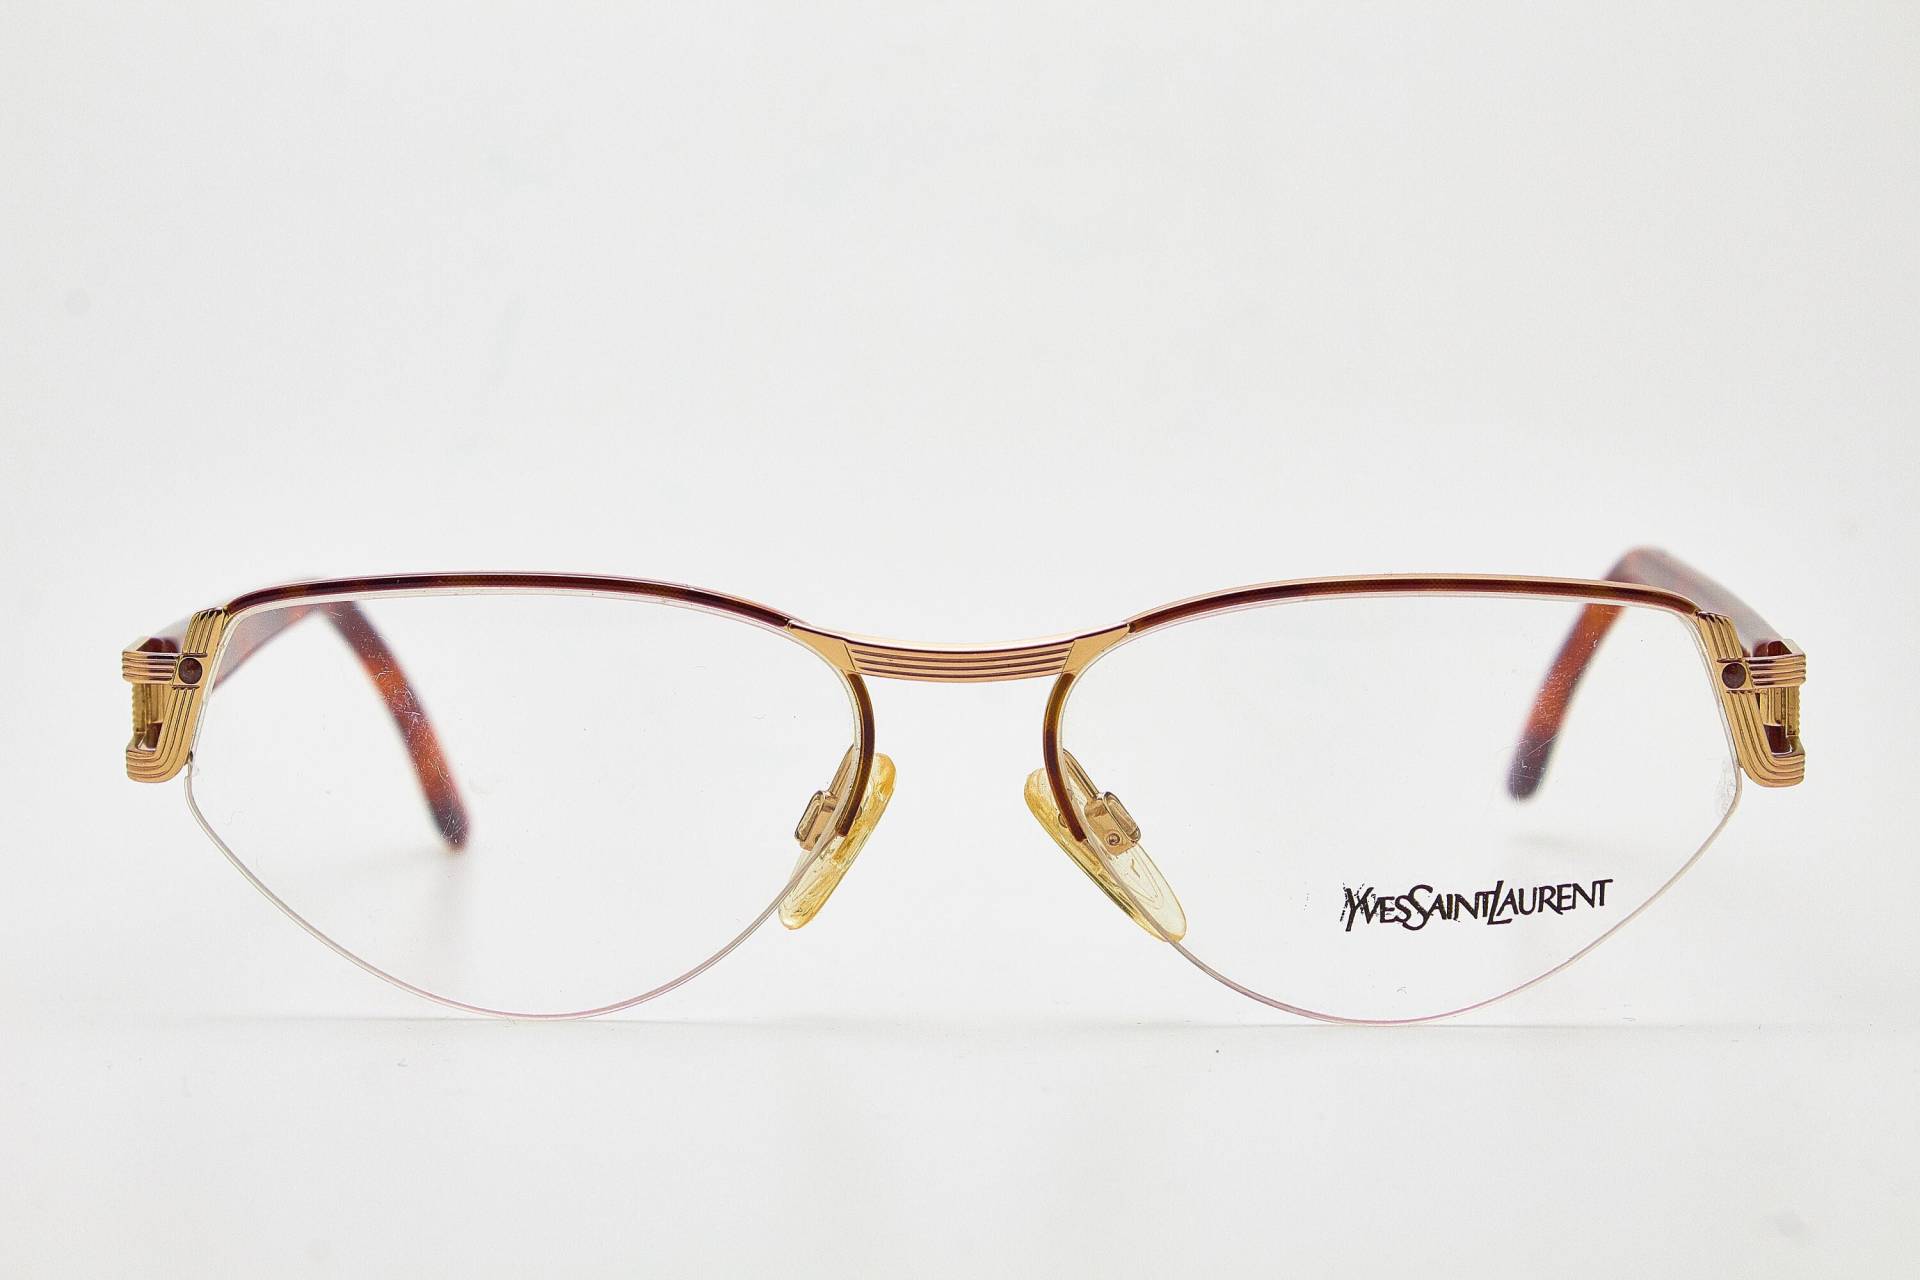 Ysl Vintage Brille 1980Er Jahre Yves Saint Laurent/Katzenaugen-Brille/Cateye-Brille/Schildkröten-Brille/Goldene von VintageGlassesVault